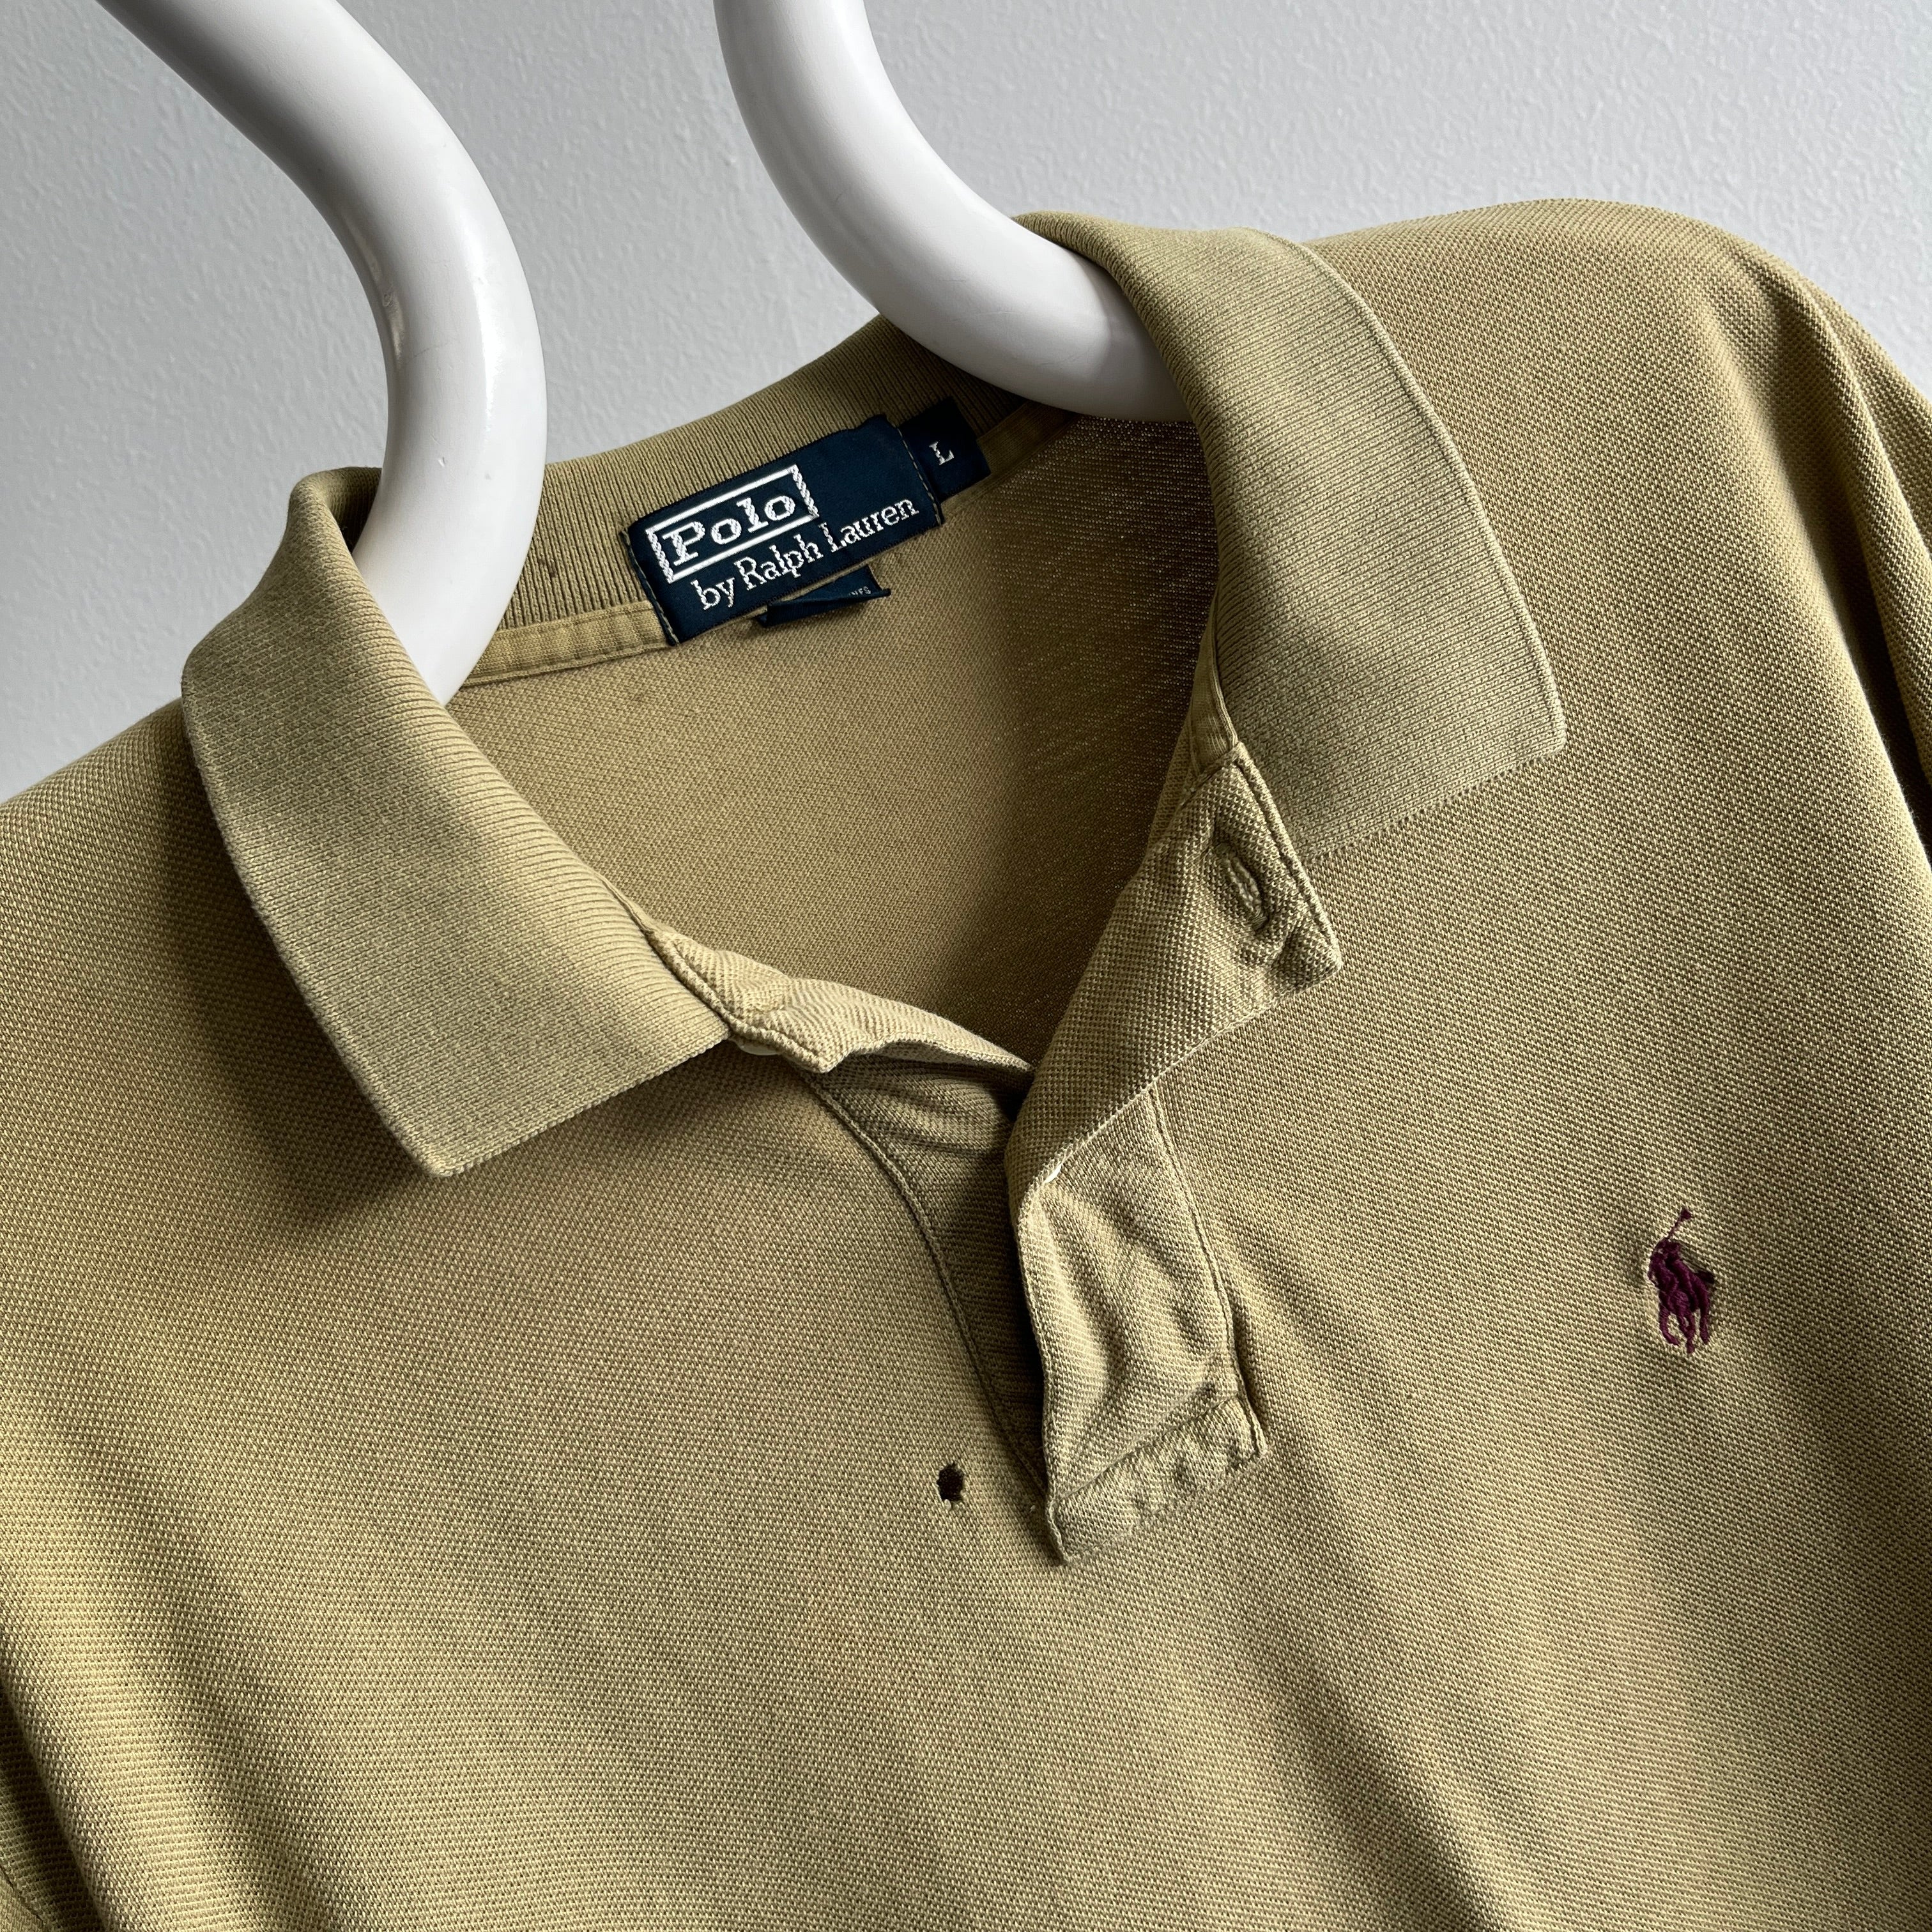 1990/2000s Khaki Ralph Lauren Long Sleeve Polo Shirt with a Single Small Hole